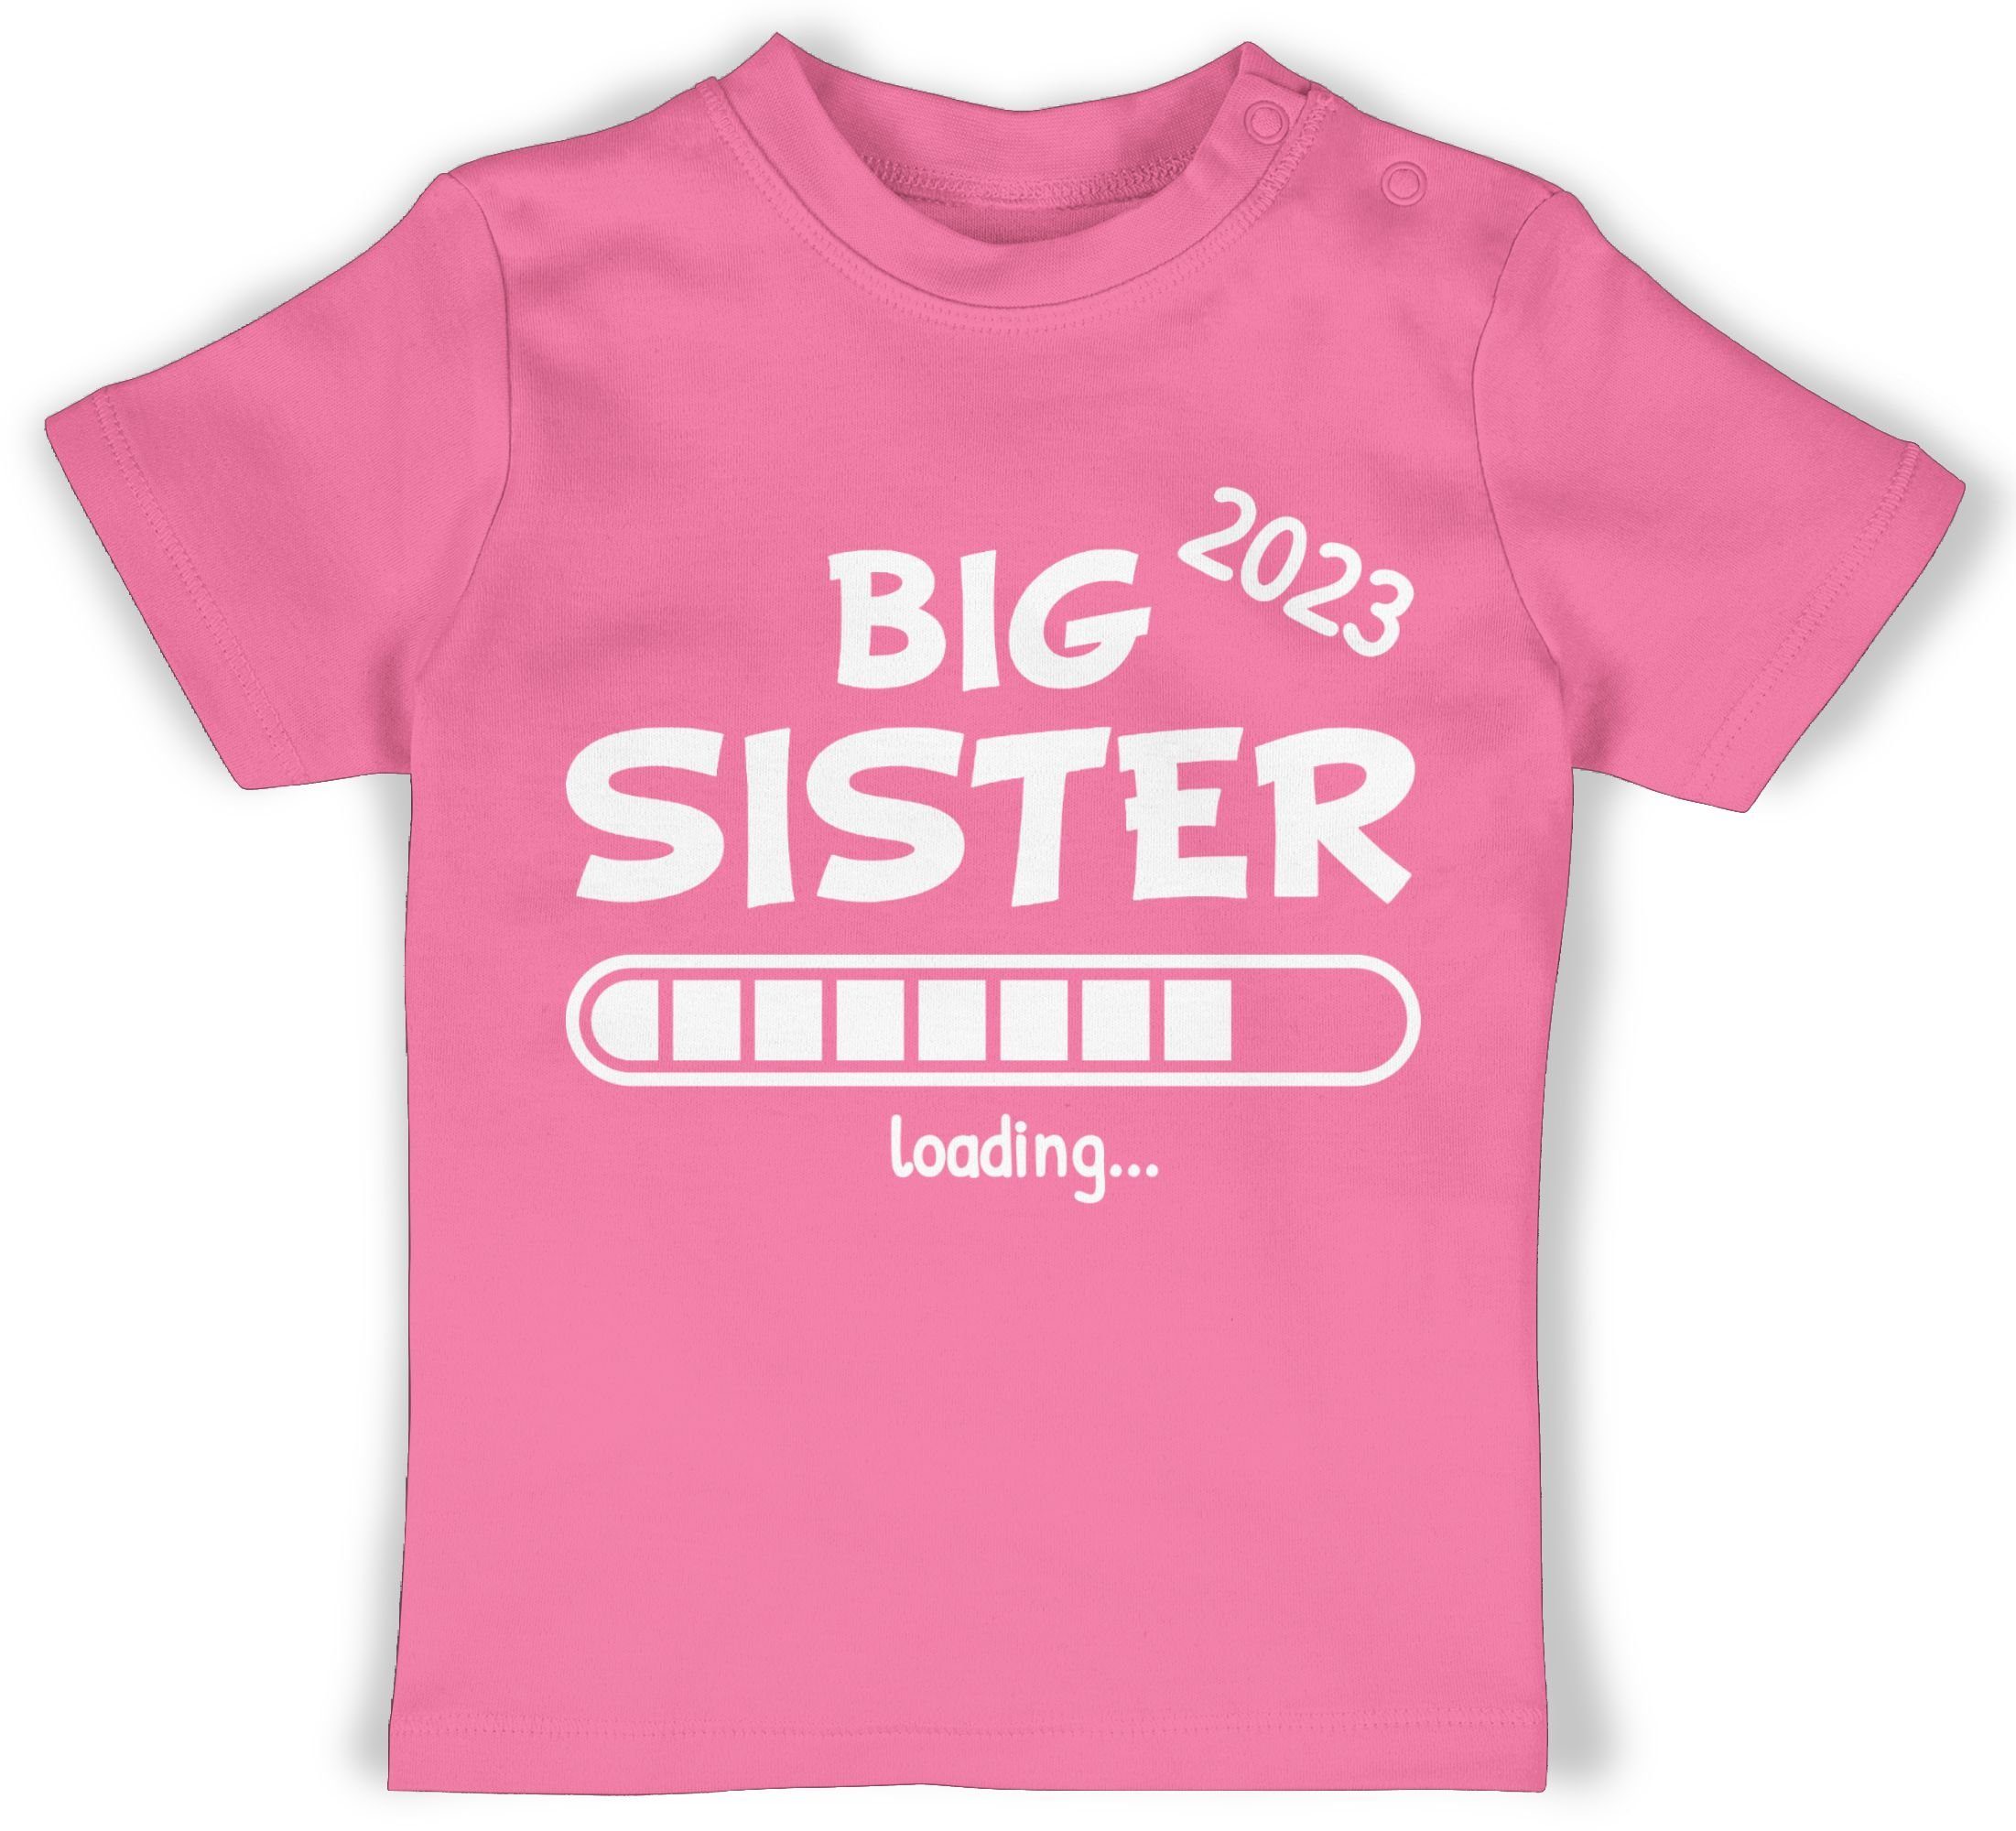 2 Shirtracer Pink Schwester Geschwister loading und Bruder T-Shirt 2023 Sister Big